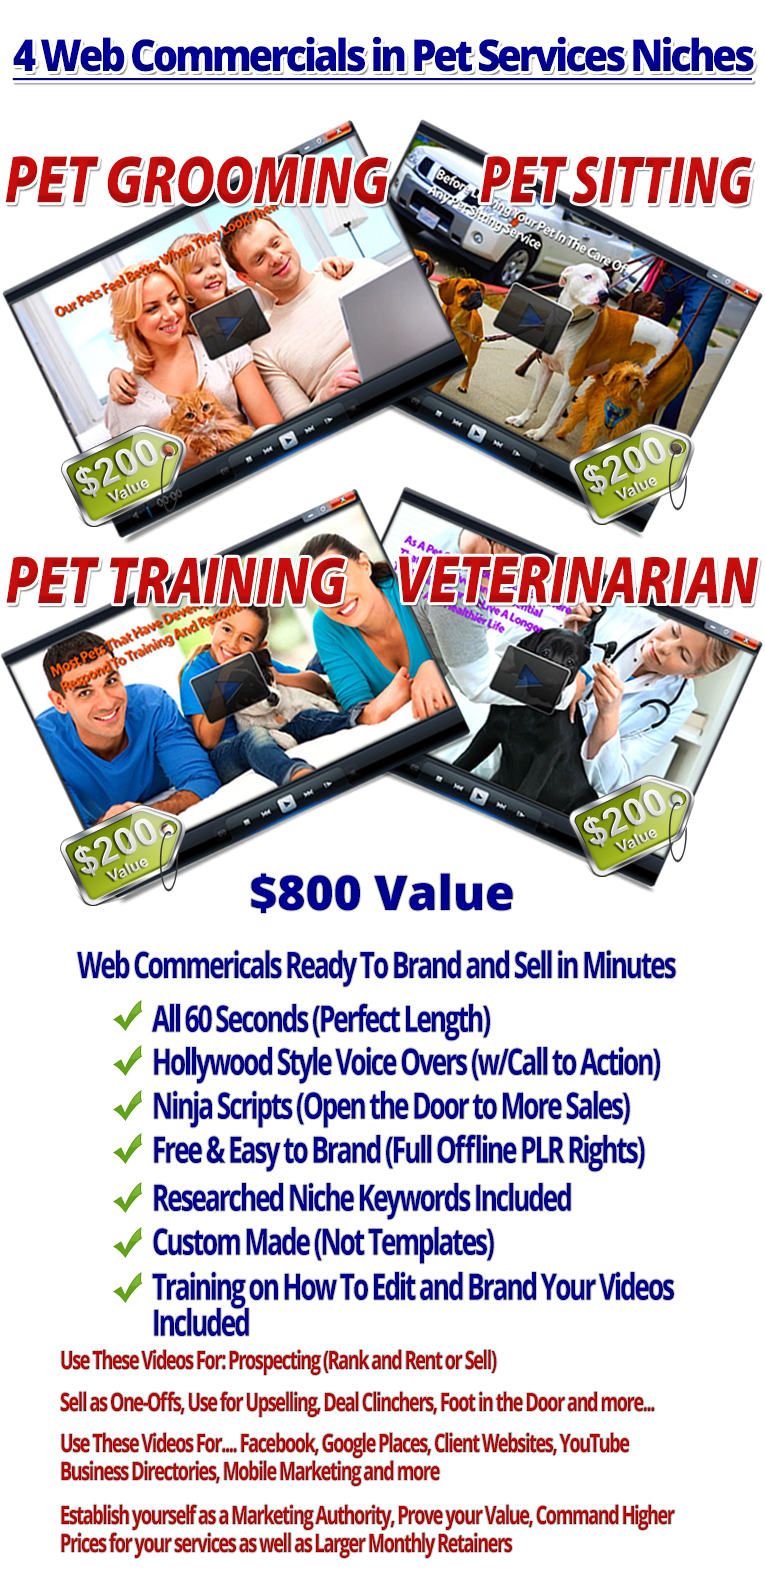 Volume 8.2 Pet Services